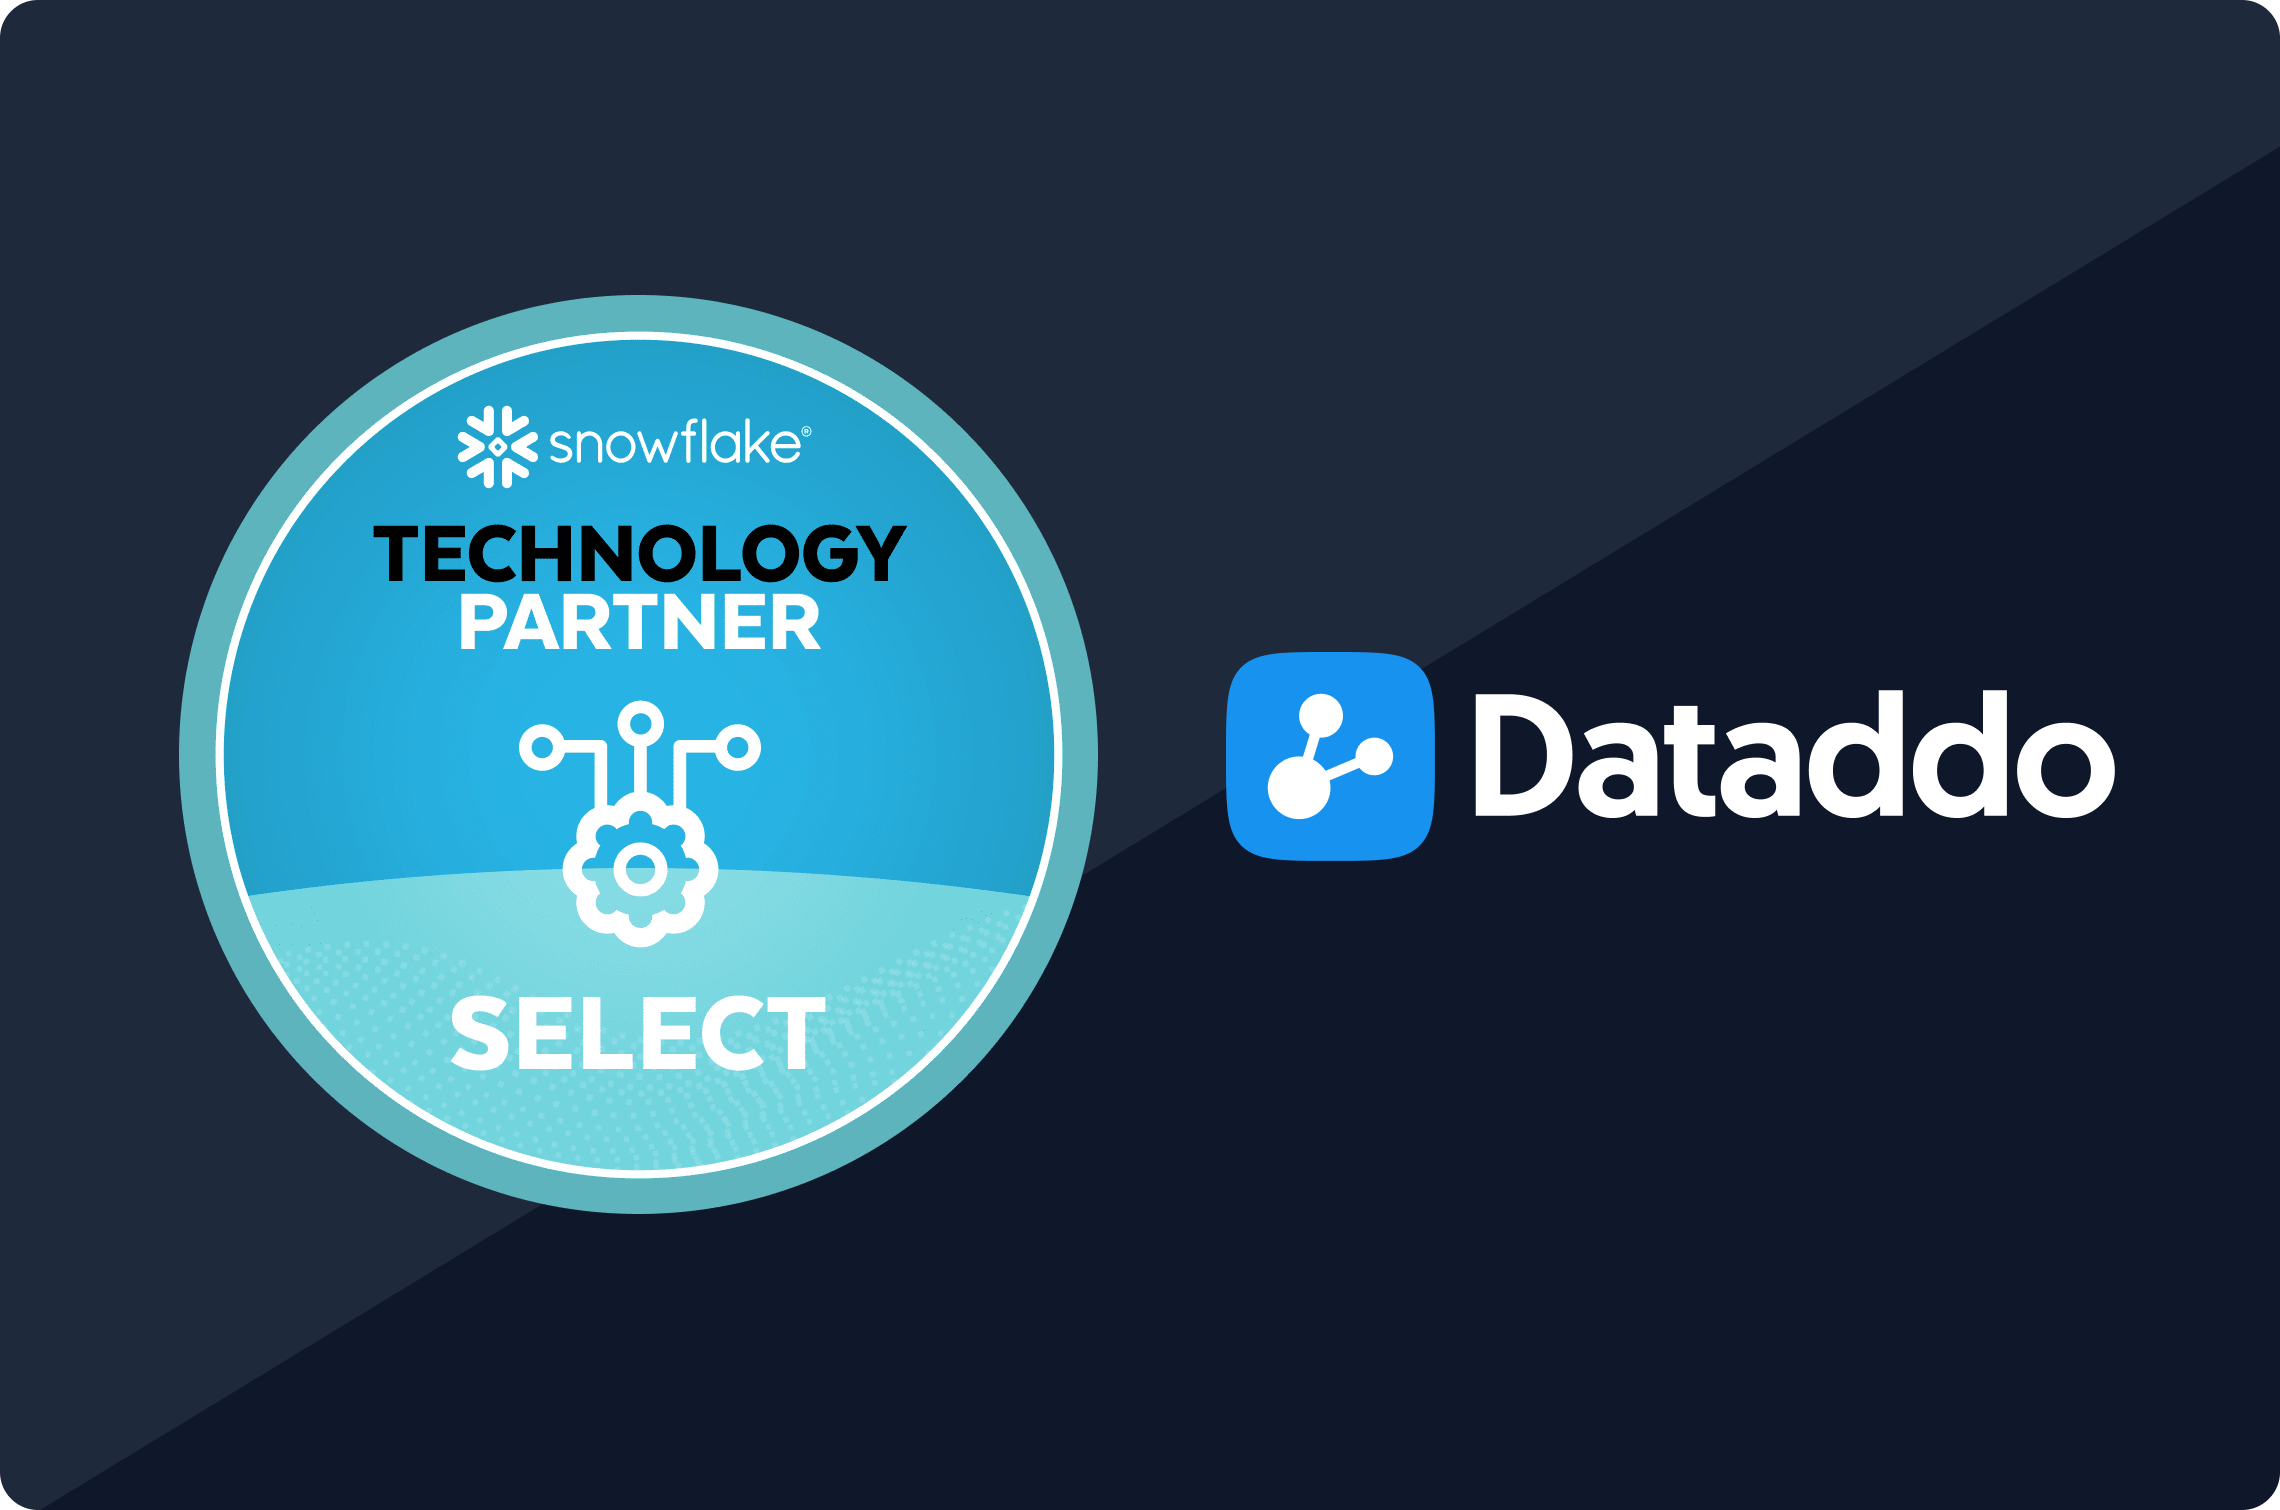 Dataddo, Snowflake Technology Partner Select